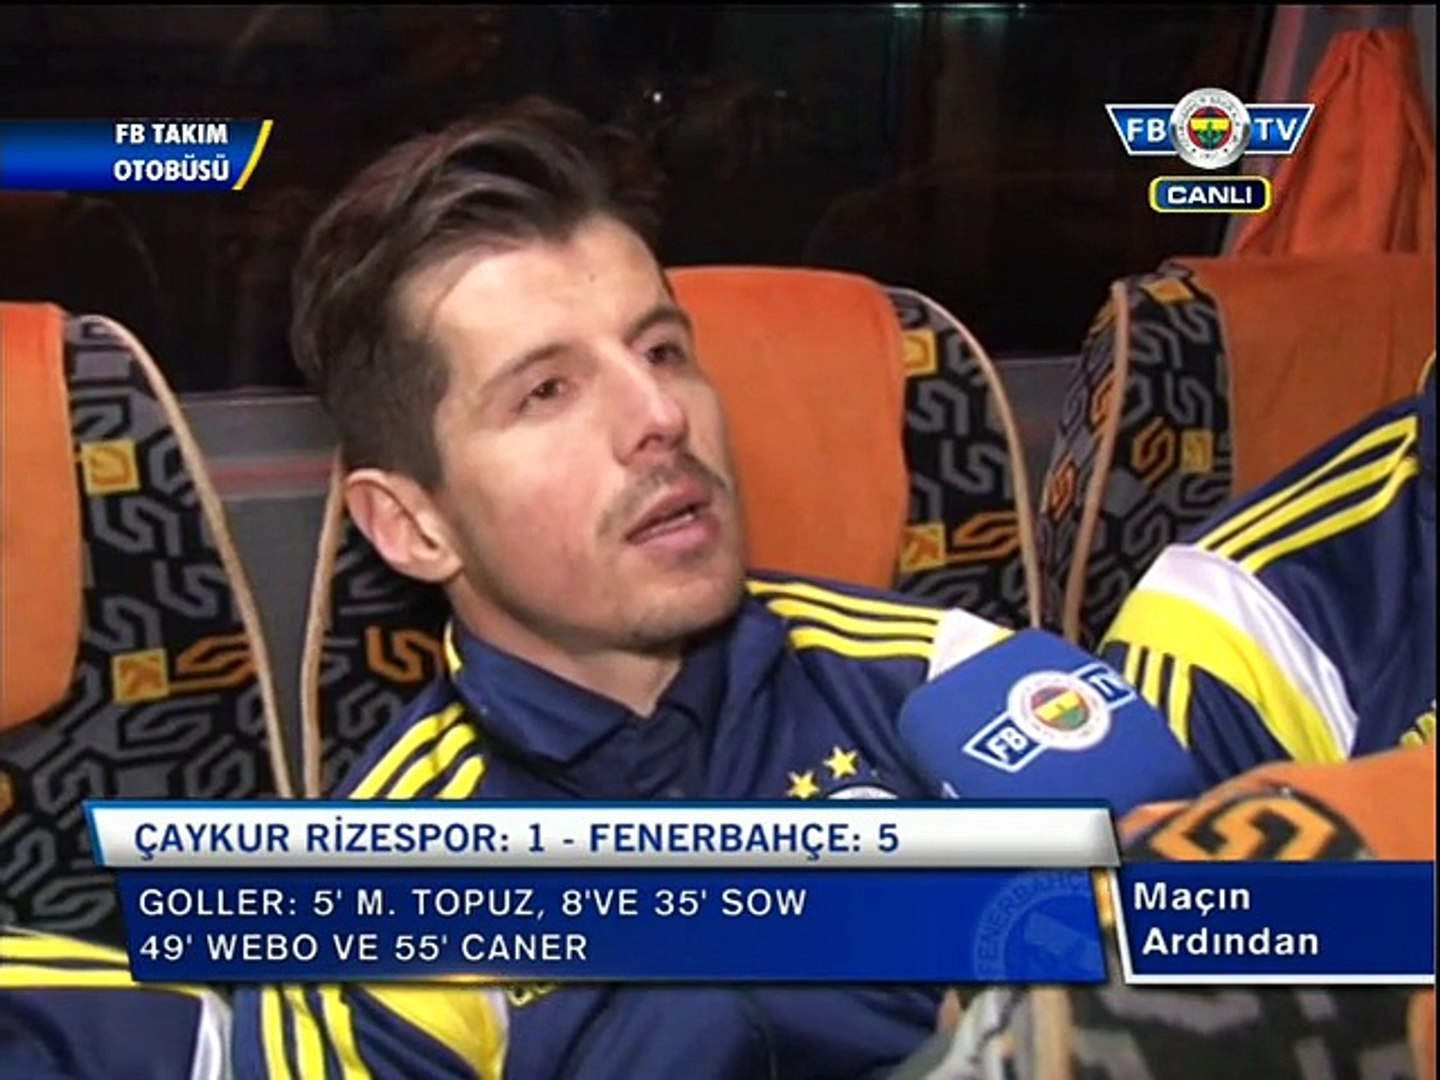 FB TV Takım Otobüsü Röportajları - Çaykur Rizespor 1-5 Fenerbahçe -  Dailymotion Video